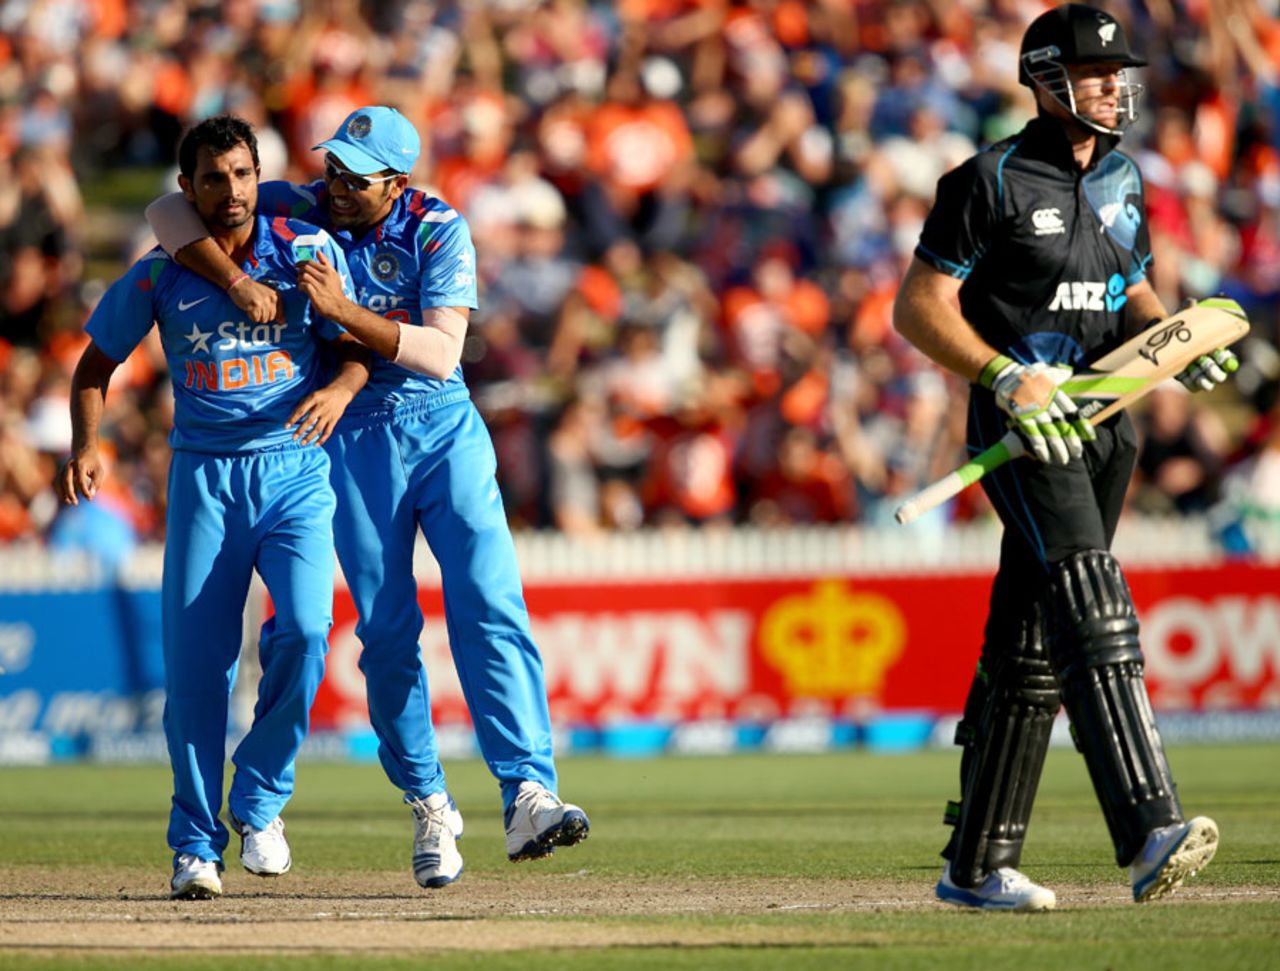 Mohammed Shami trapped Martin Guptill lbw, New Zealand v India, 4th ODI, Hamilton, January 28, 2014